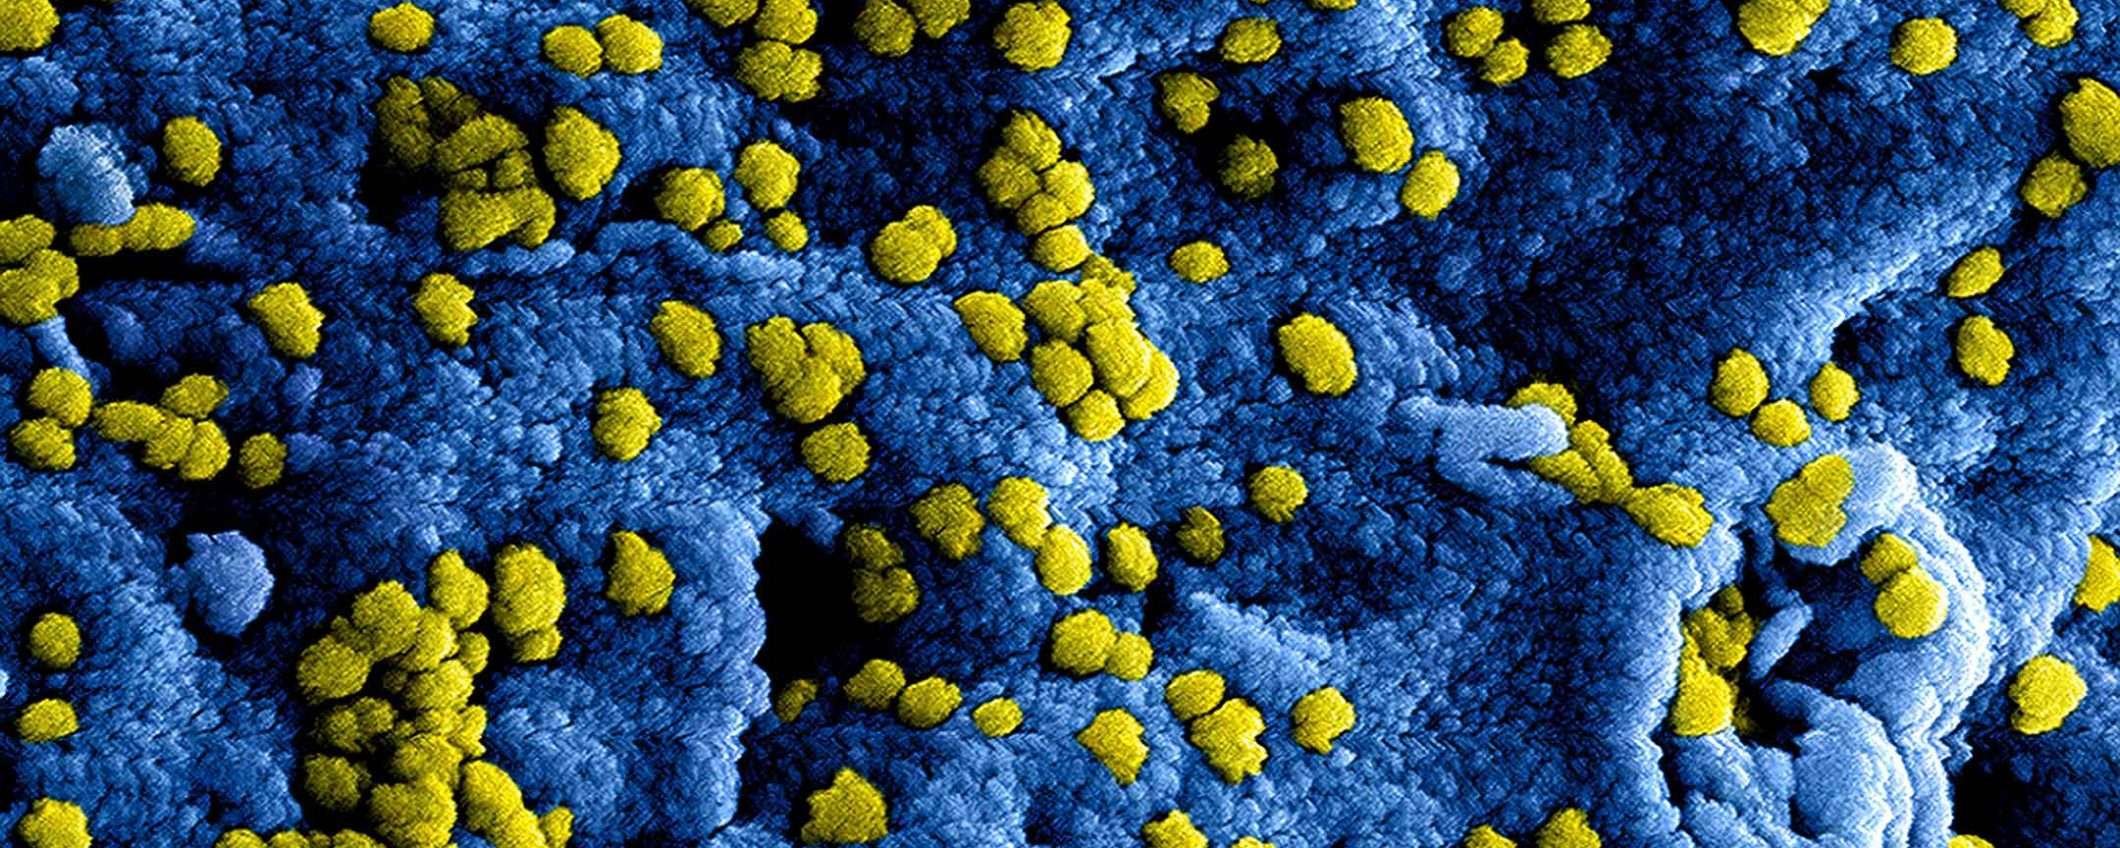 Coronavirus: aggiornamenti, fonti e risorse per seguire l'evoluzione dell'epidemia